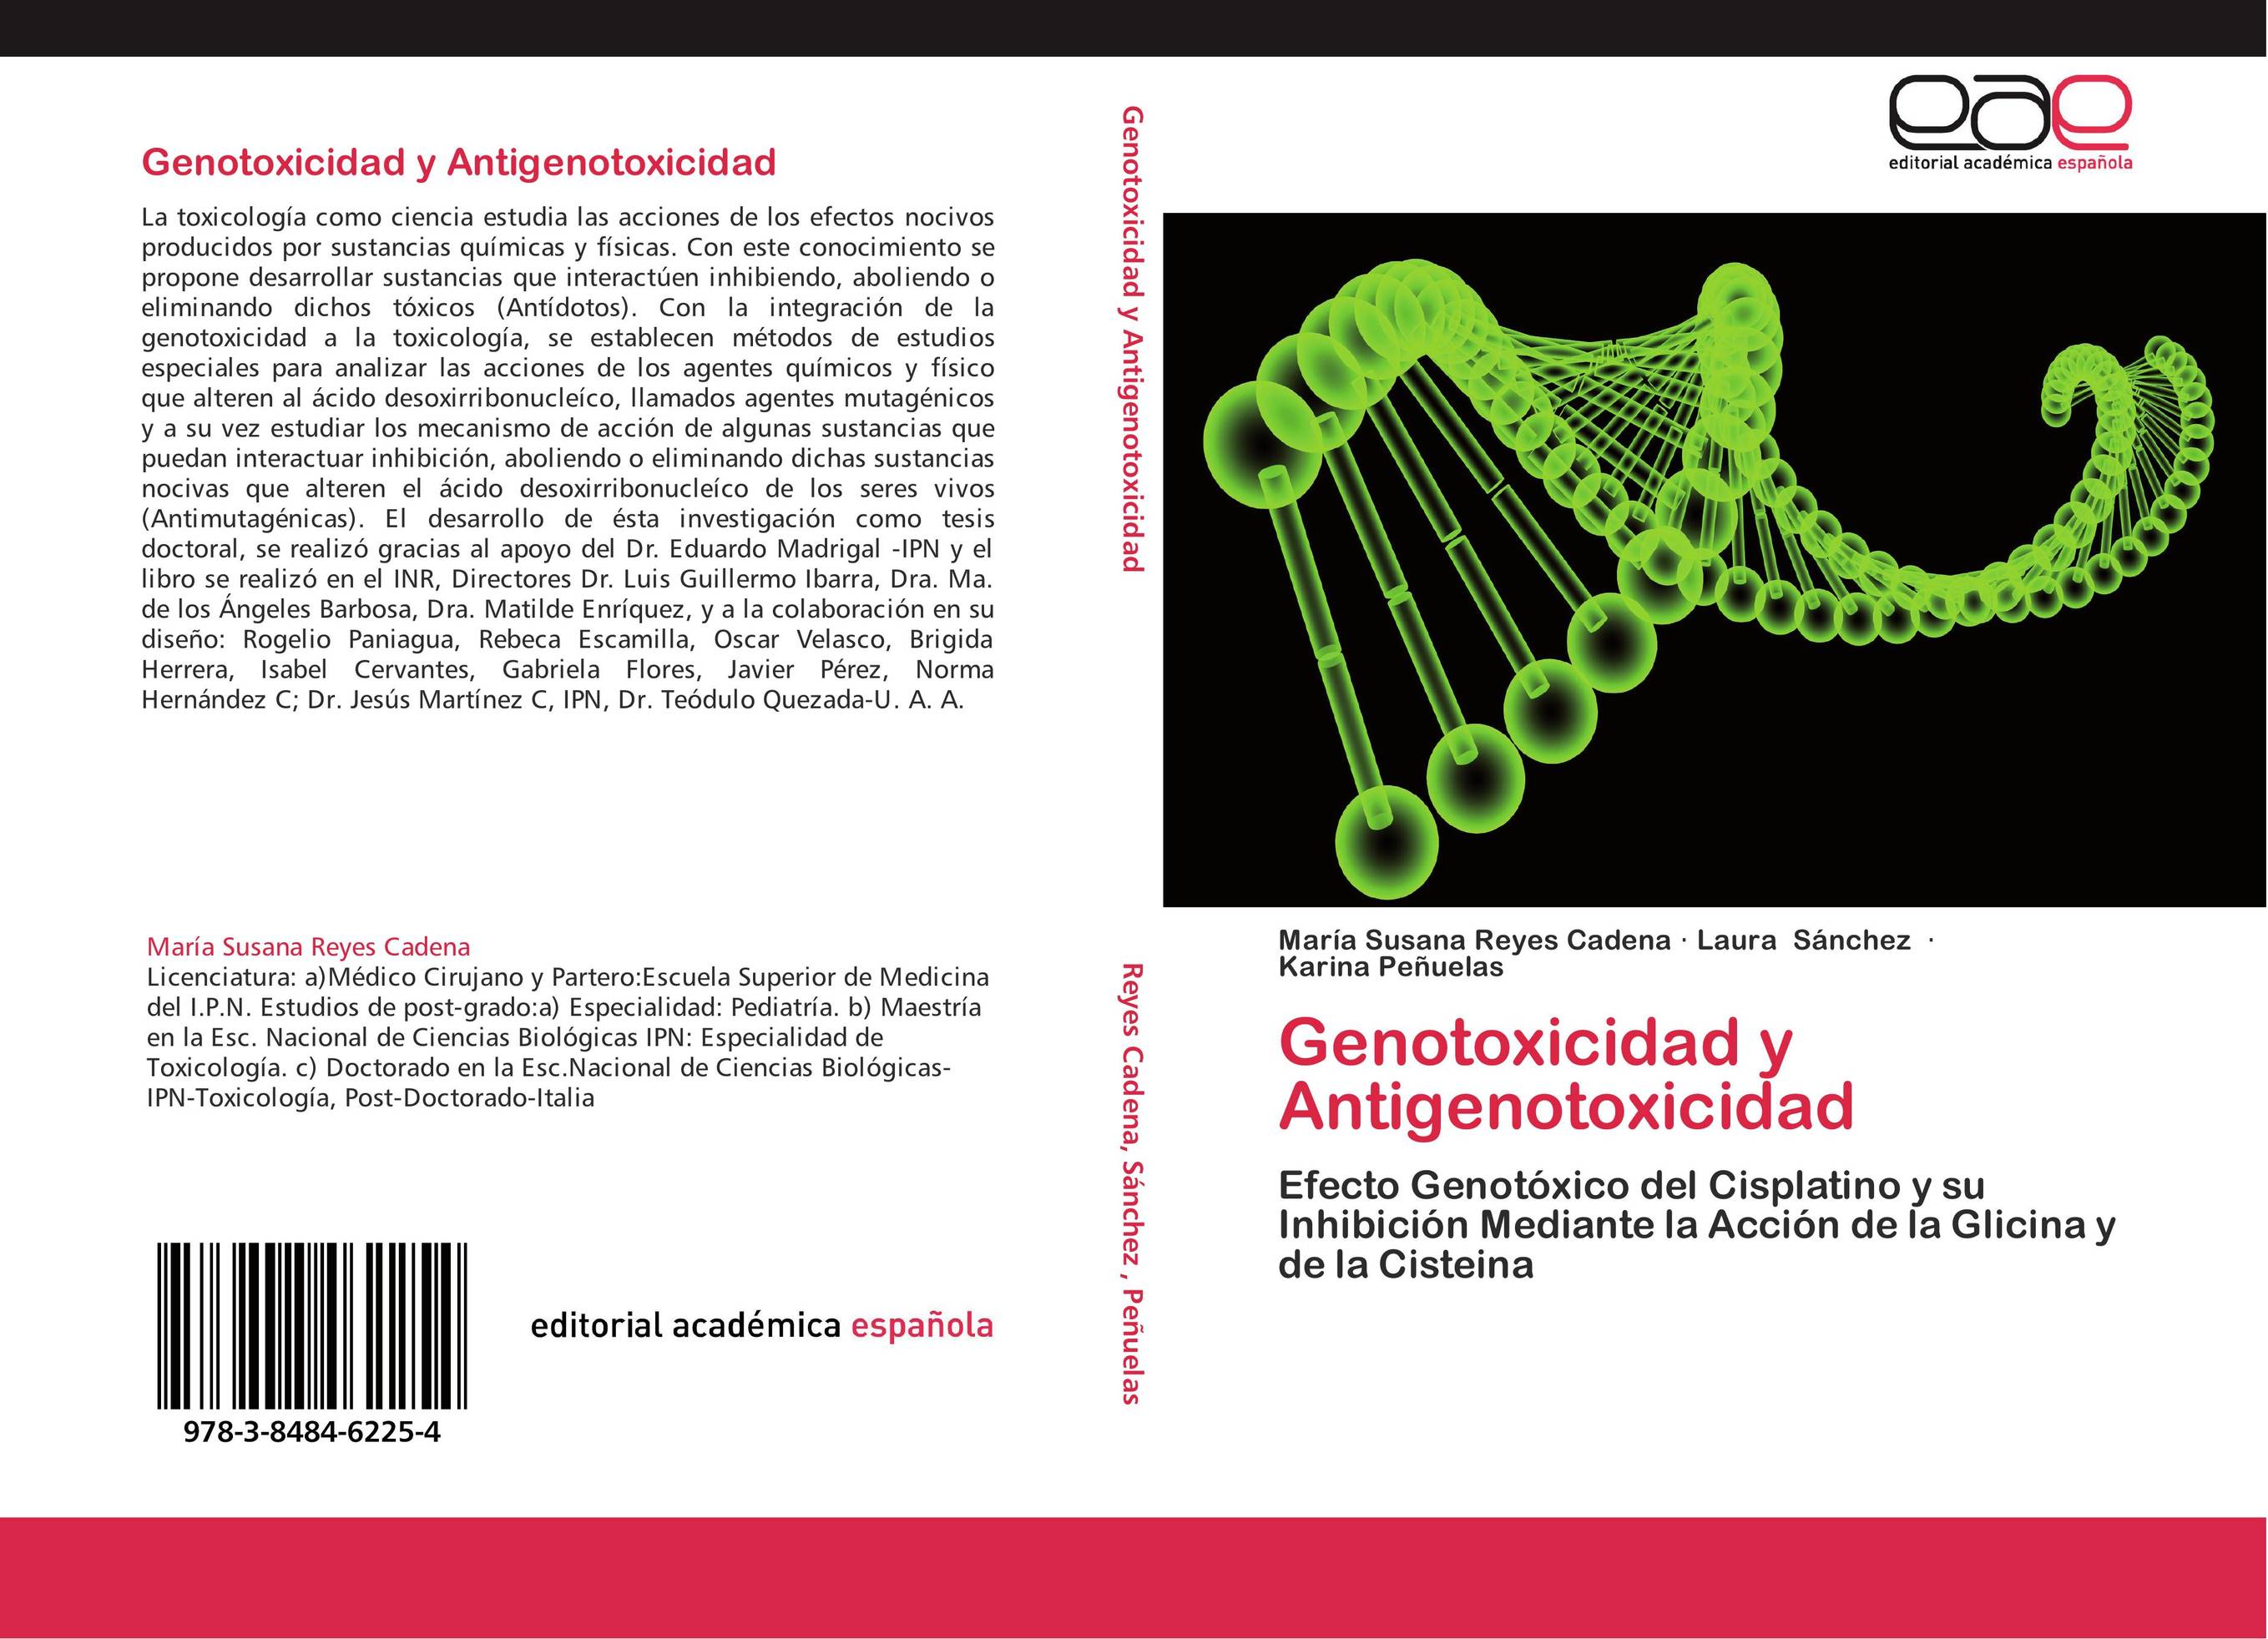 Genotoxicidad y Antigenotoxicidad